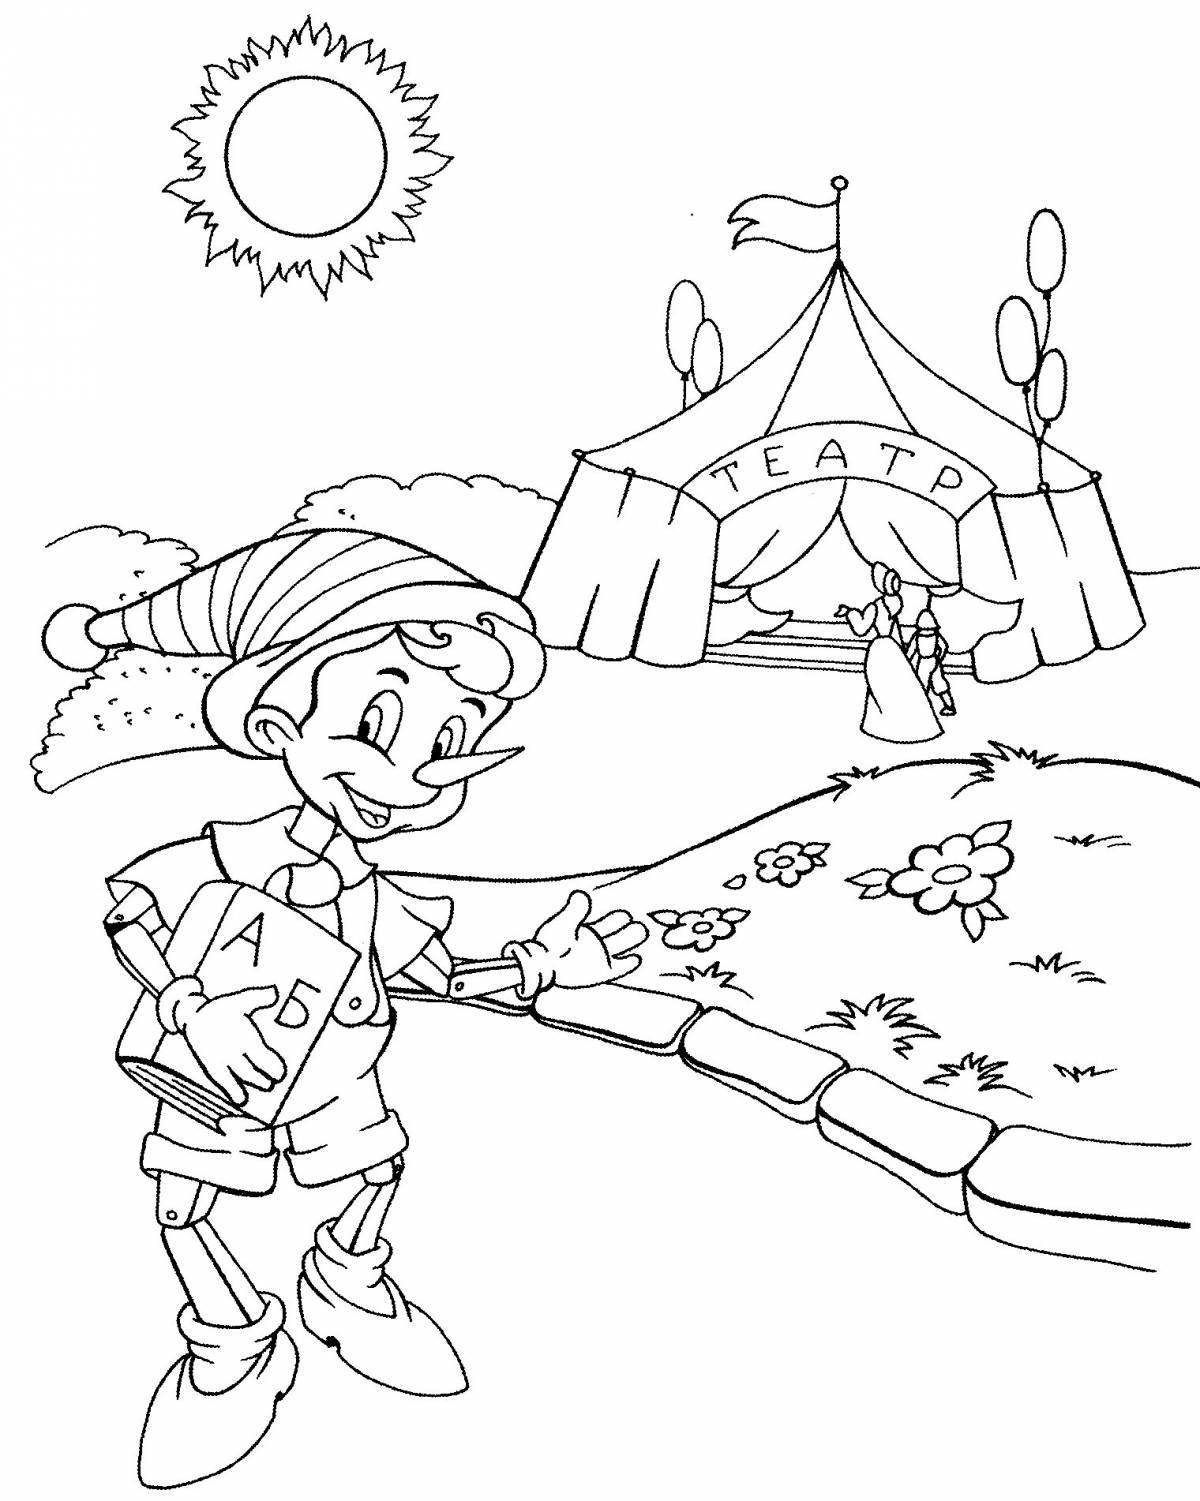 Увлекательная раскраска пиноккио для детей 4-5 лет